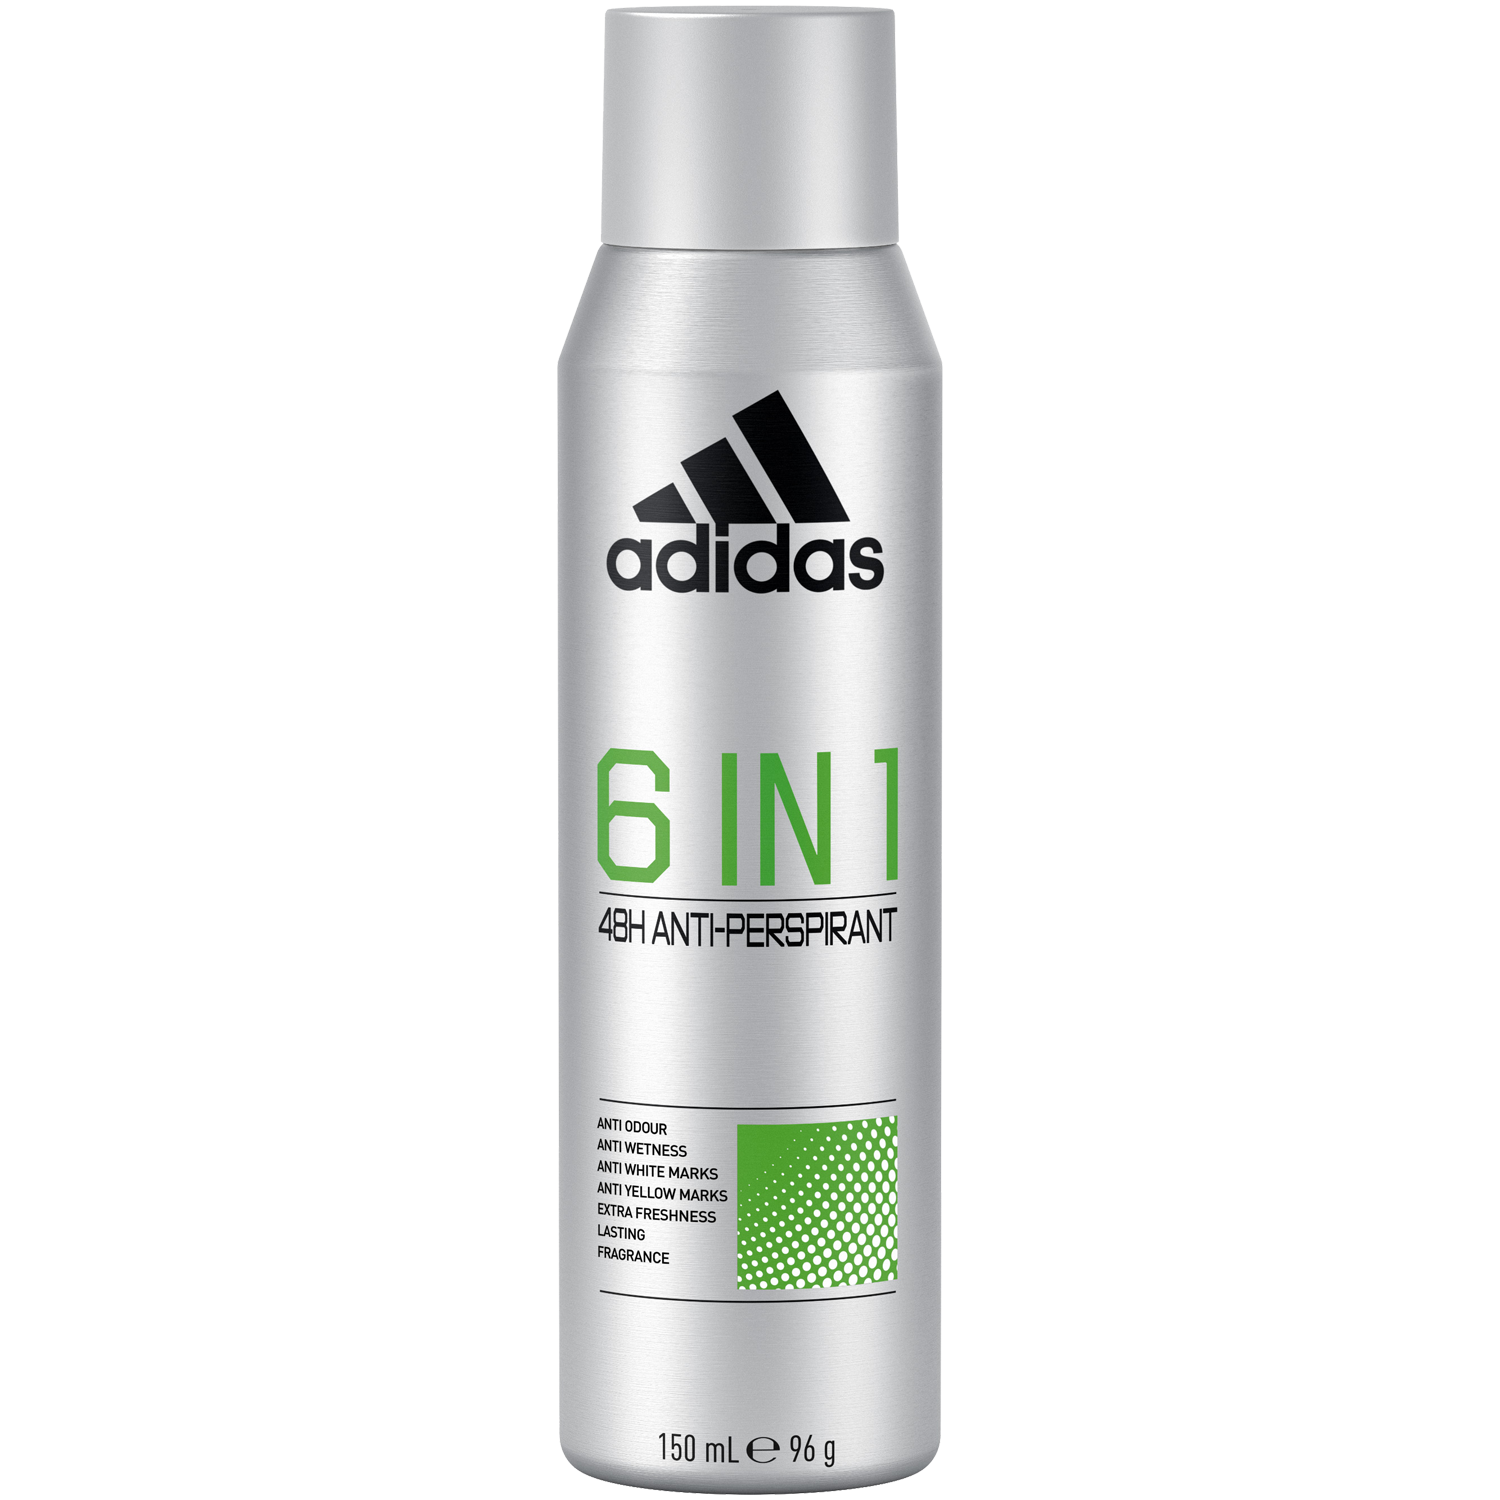 Adidas Men 6w1 antyperspirant w sprayu męski, 150 ml | hebe.pl